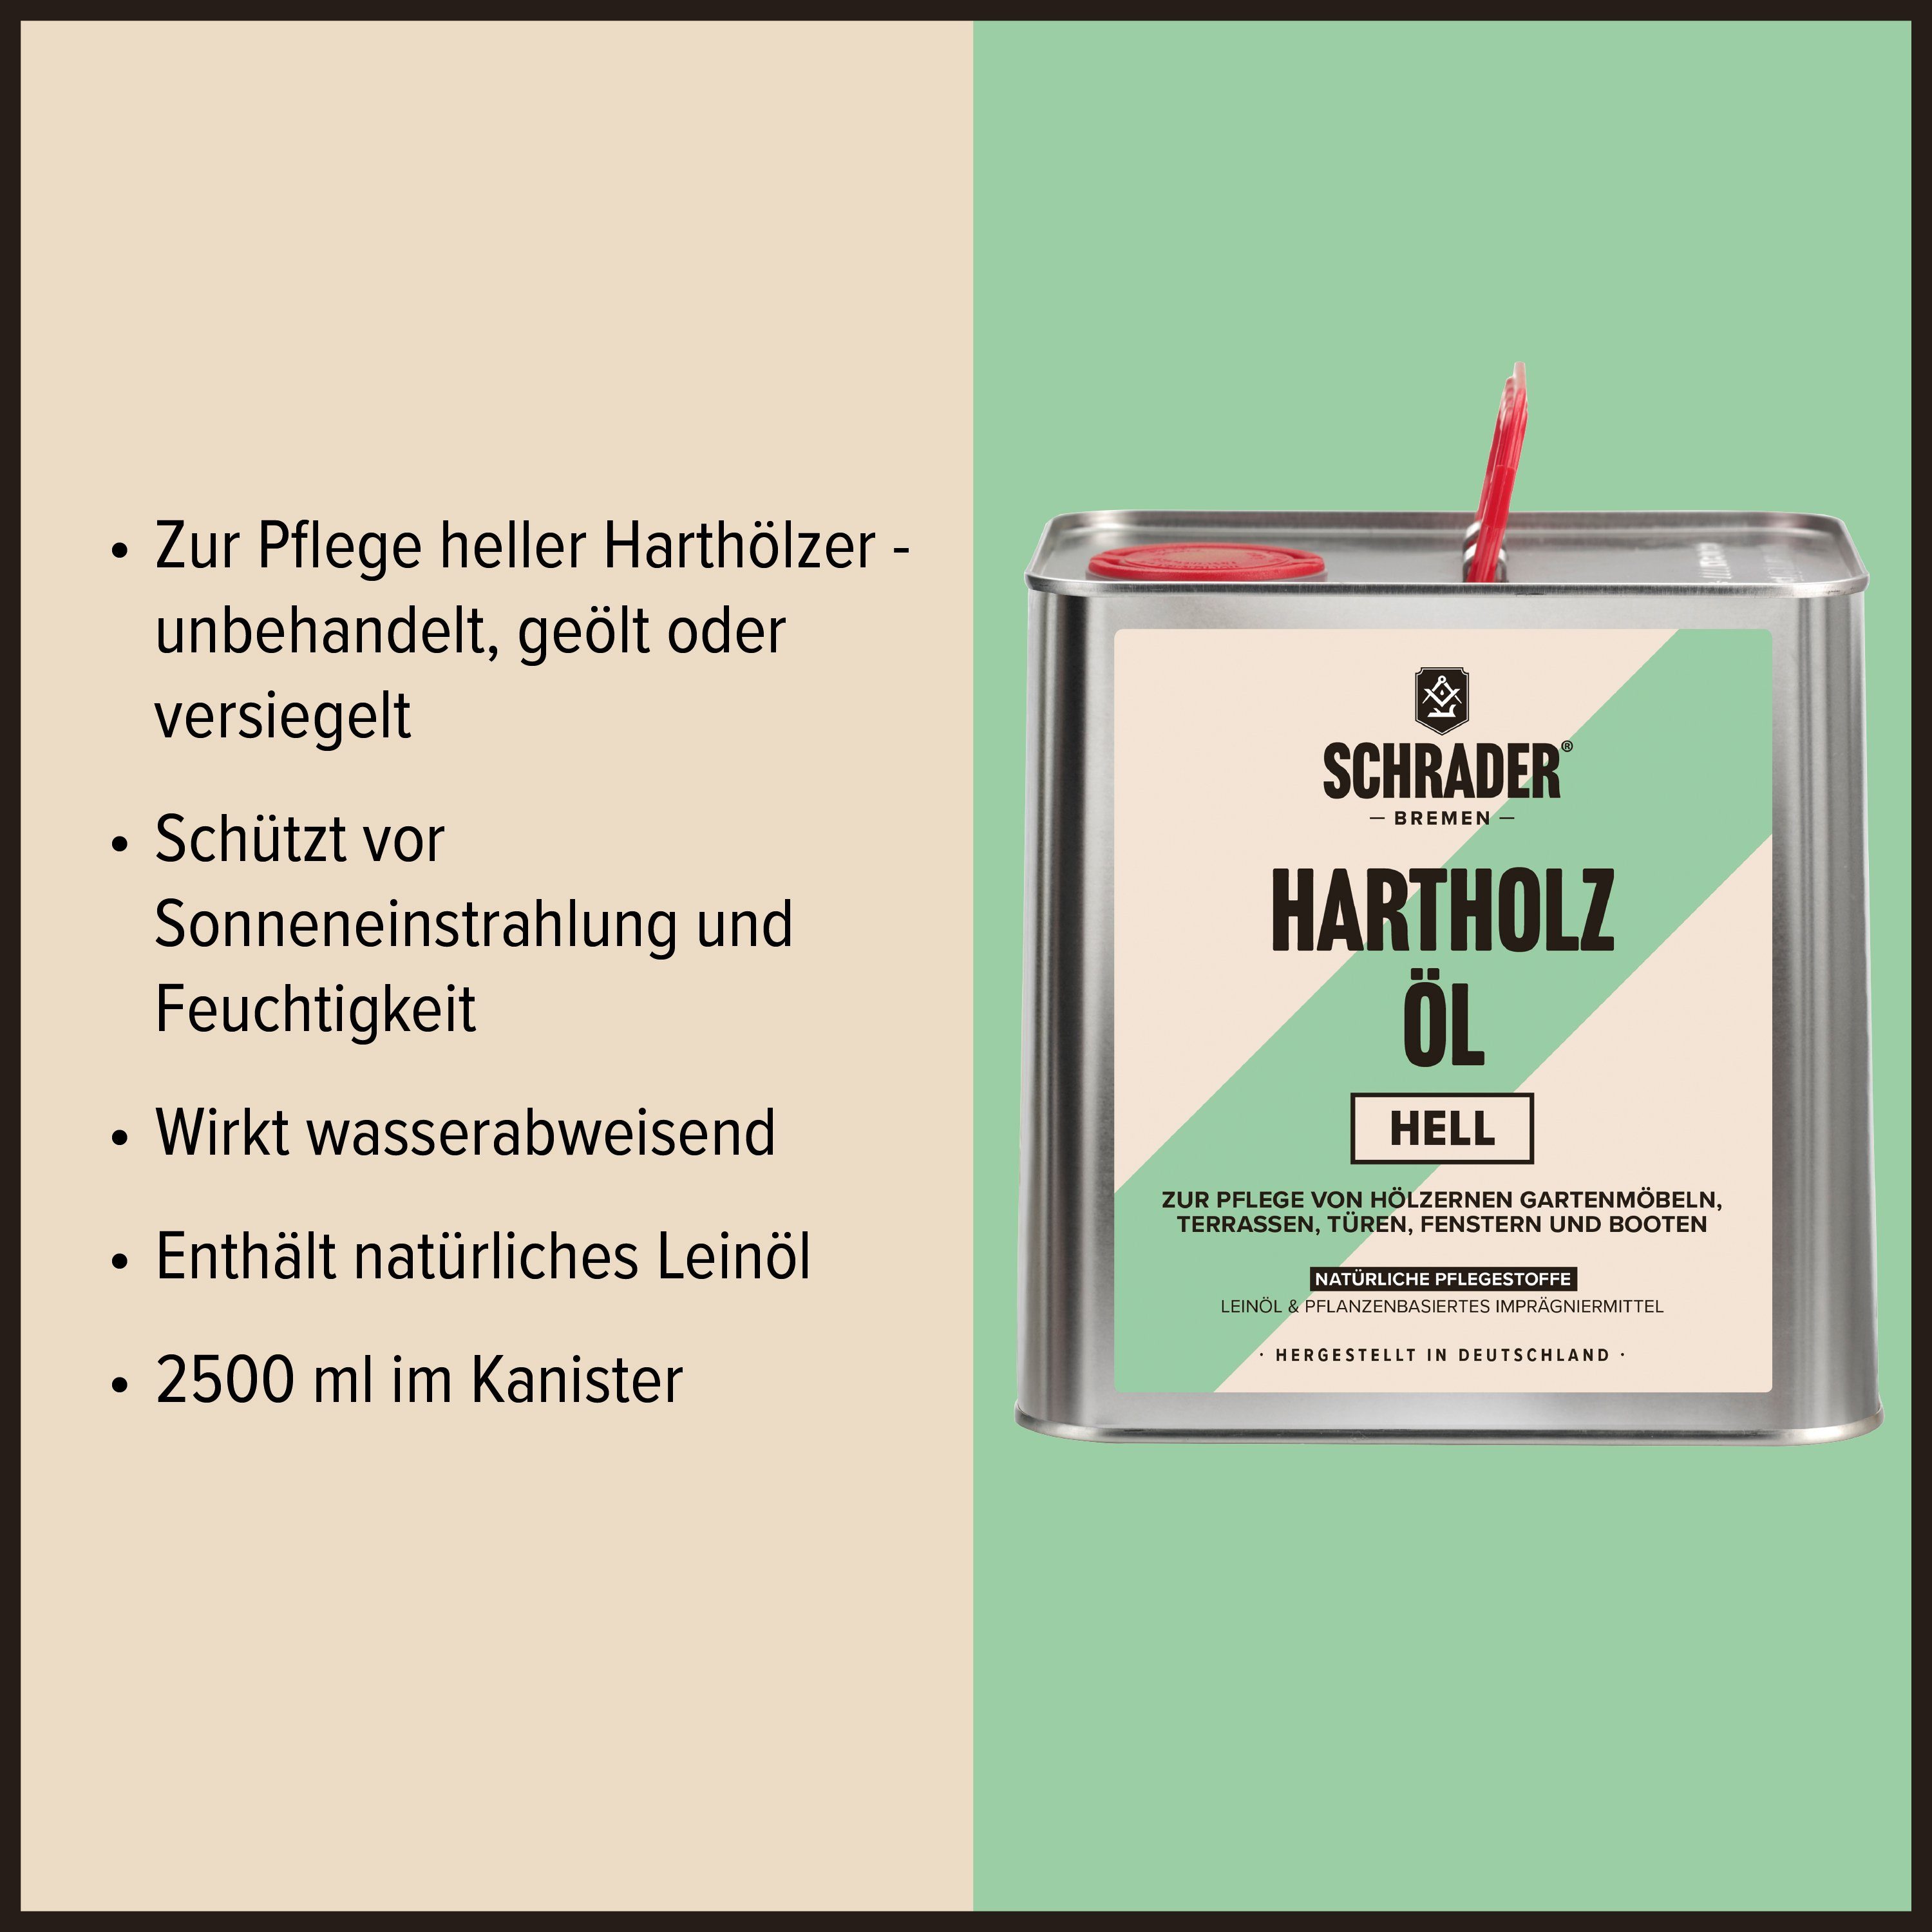 Made - Schmutzbürste Hartholzöl und Teaköl - Pflegeset 2-teilig - mit hell 2,5L in Germany -, Schrader Terrassenöl Enthält Hartholzöl -